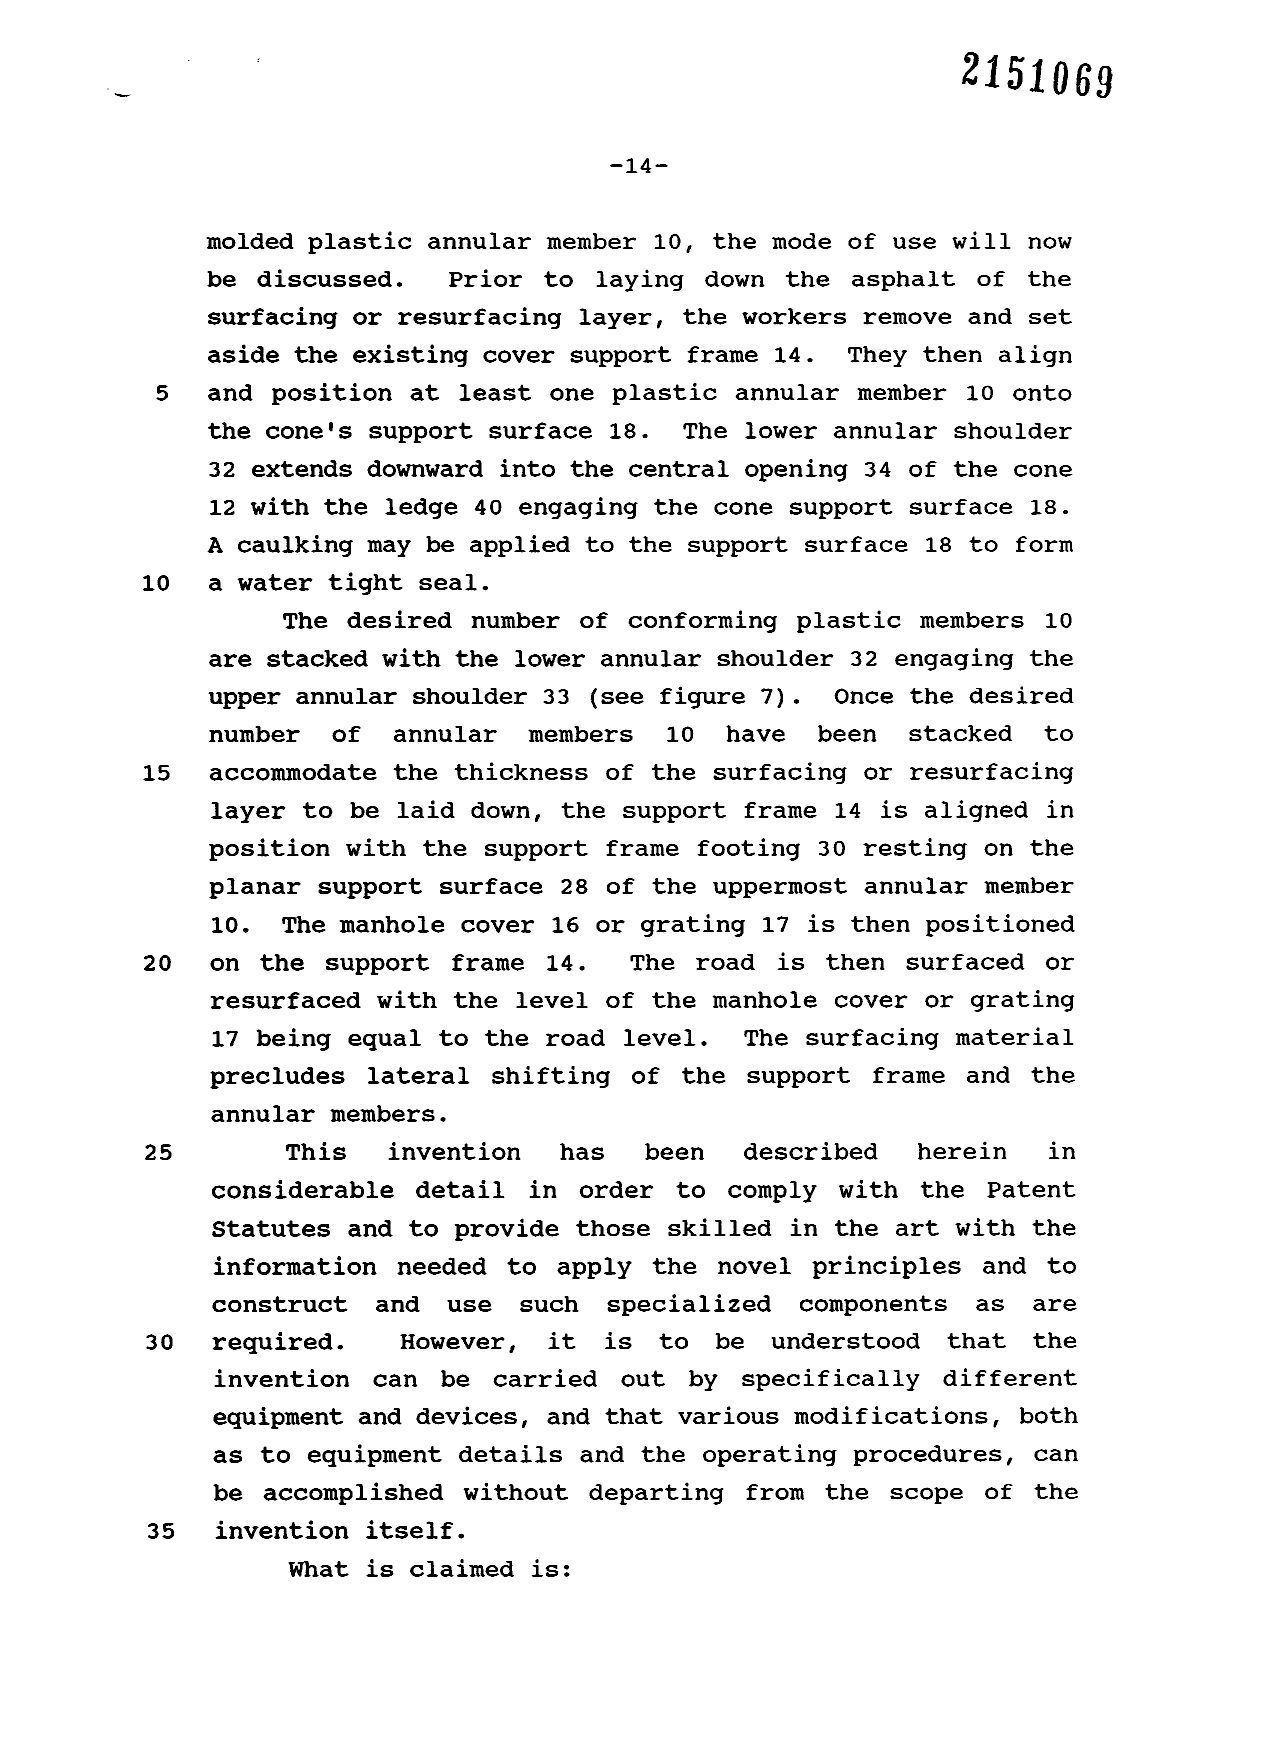 Canadian Patent Document 2151069. Description 19970130. Image 14 of 14